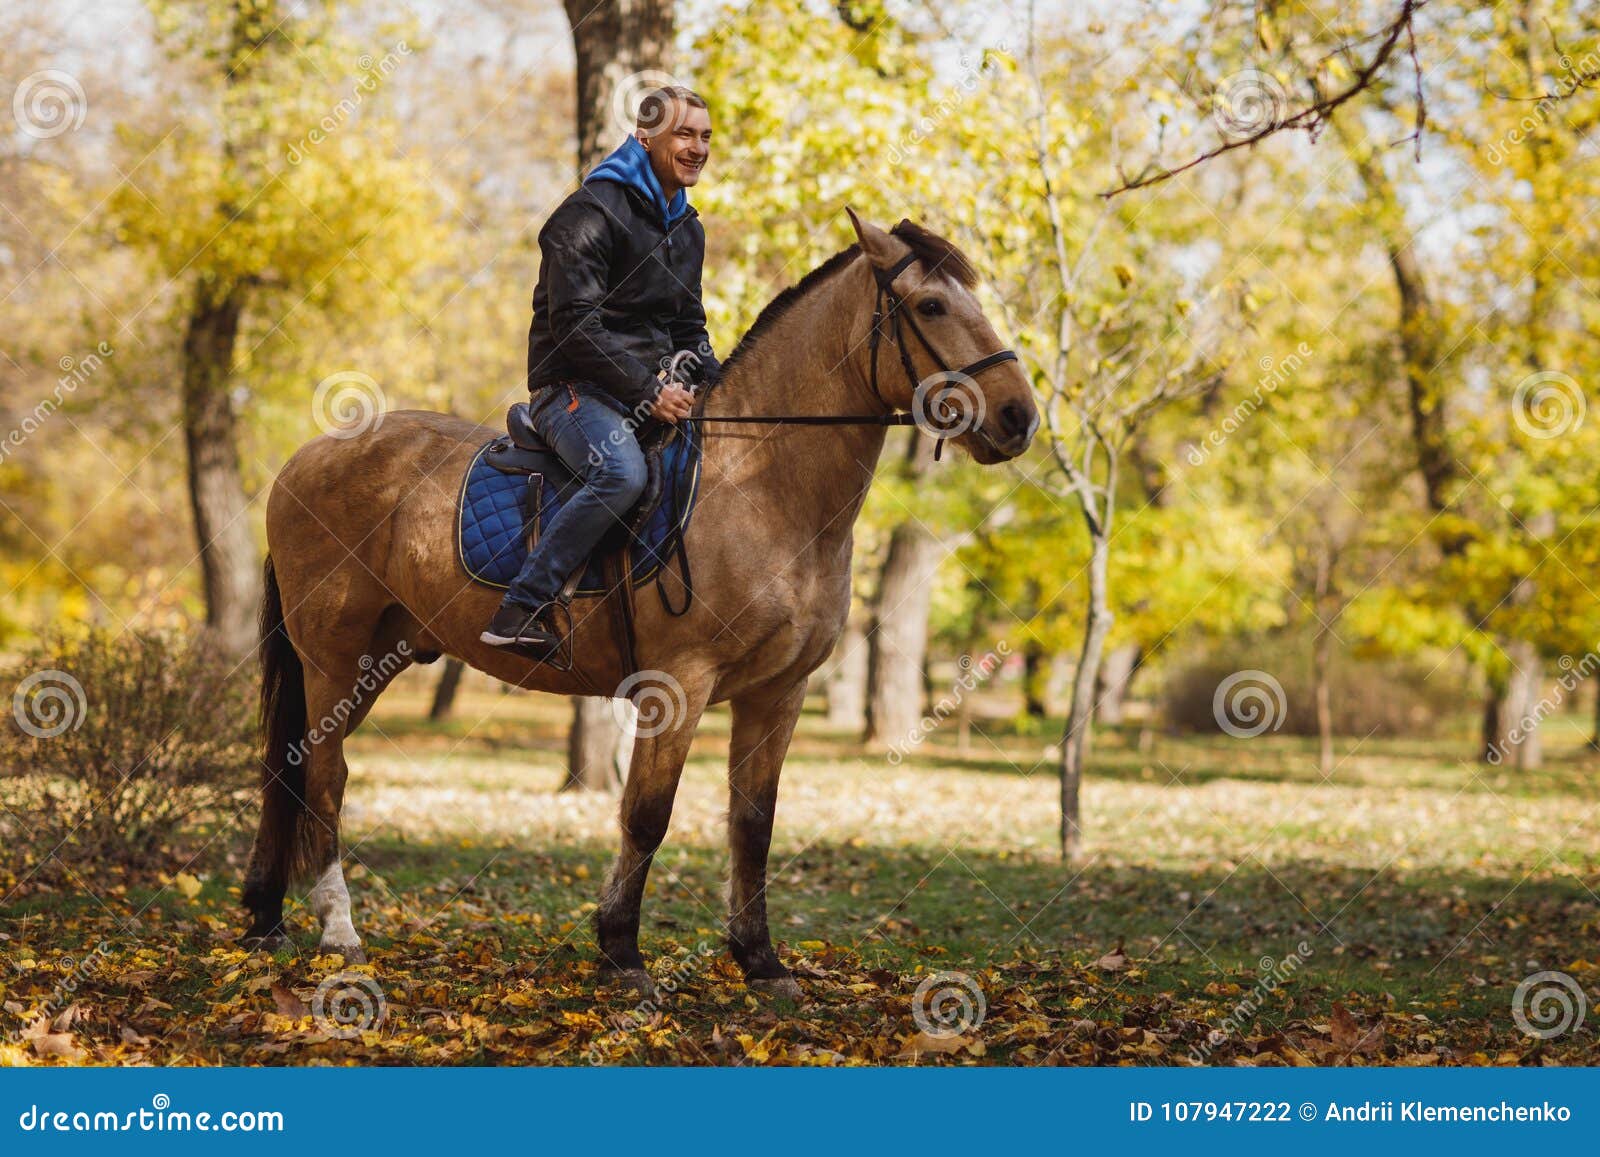 Мужчина лошадь в браке. Мужчина верхом на коне. Мальчик сидит на коне. Красивый мужчина верхом на лошади. Парень качок верхом на лошади.